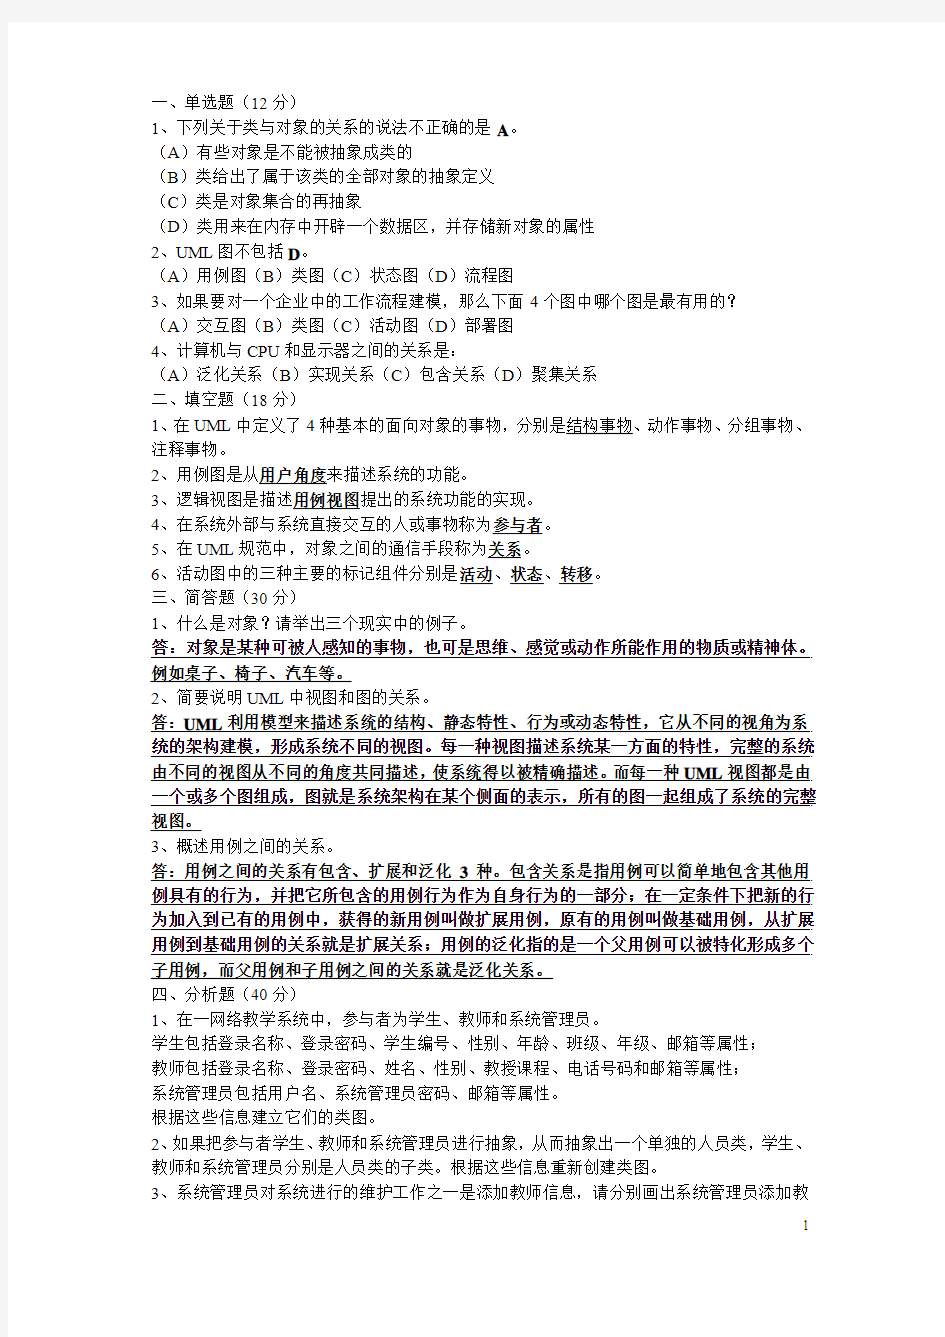 桂林电子科技大学信息科技学院08级UML复习资料